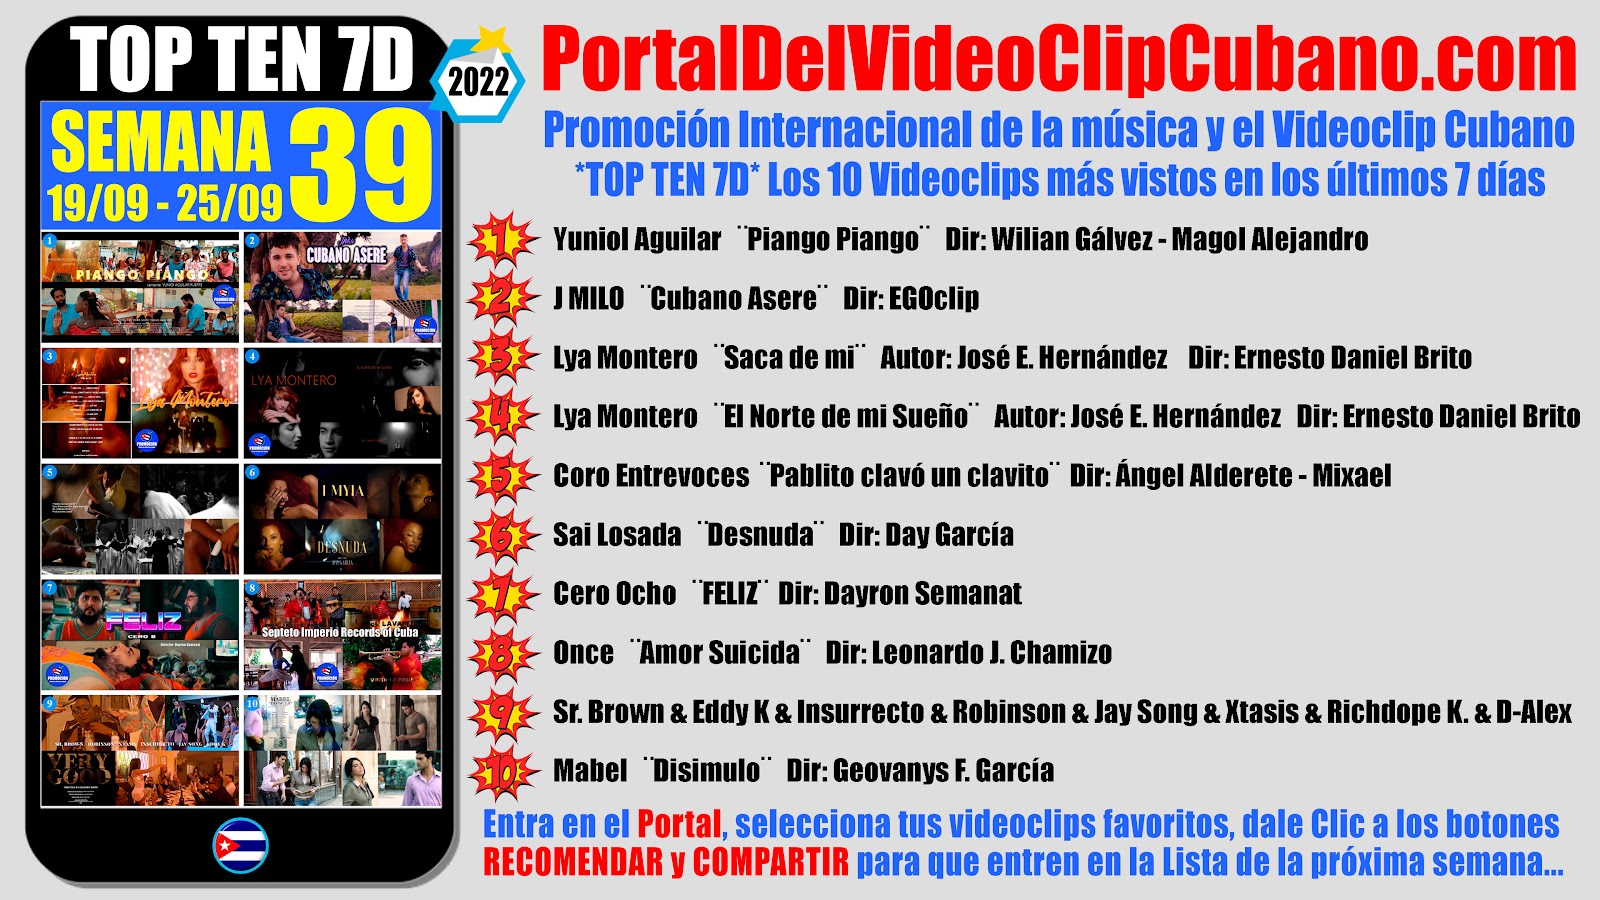 Artistas ganadores del * TOP TEN 7D * con los 10 Videoclips más vistos en la semana 39 (19/09 a 25/09 de 2022) en el Portal Del Vídeo Clip Cubano